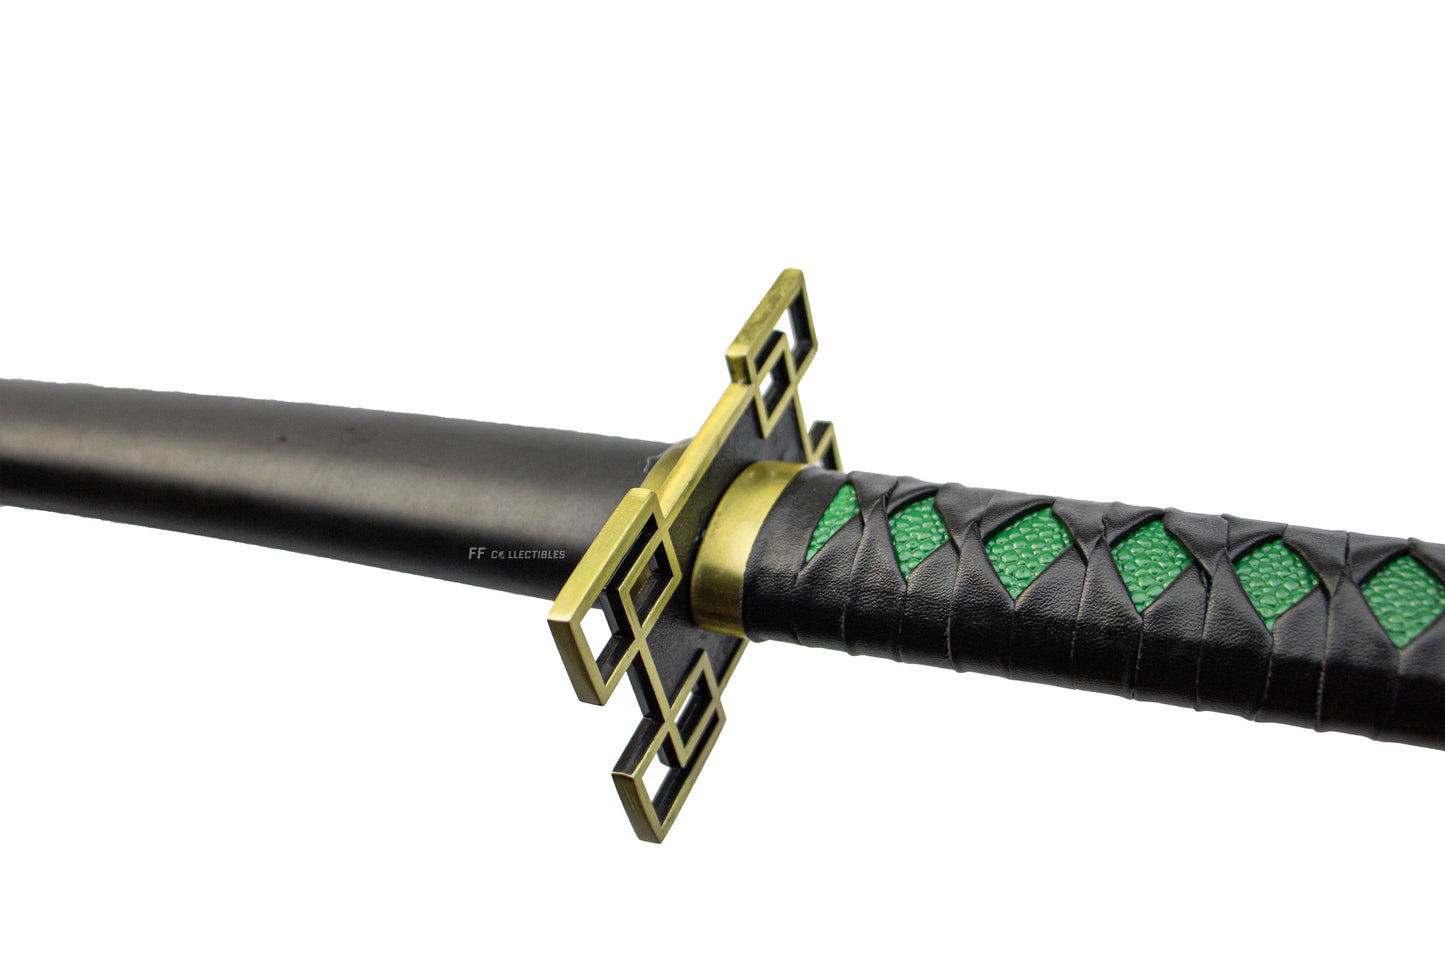 DEMON SLAYER – MUICHIRO TOKITO’S NICHIRIN SWORD (with FREE sword stand)